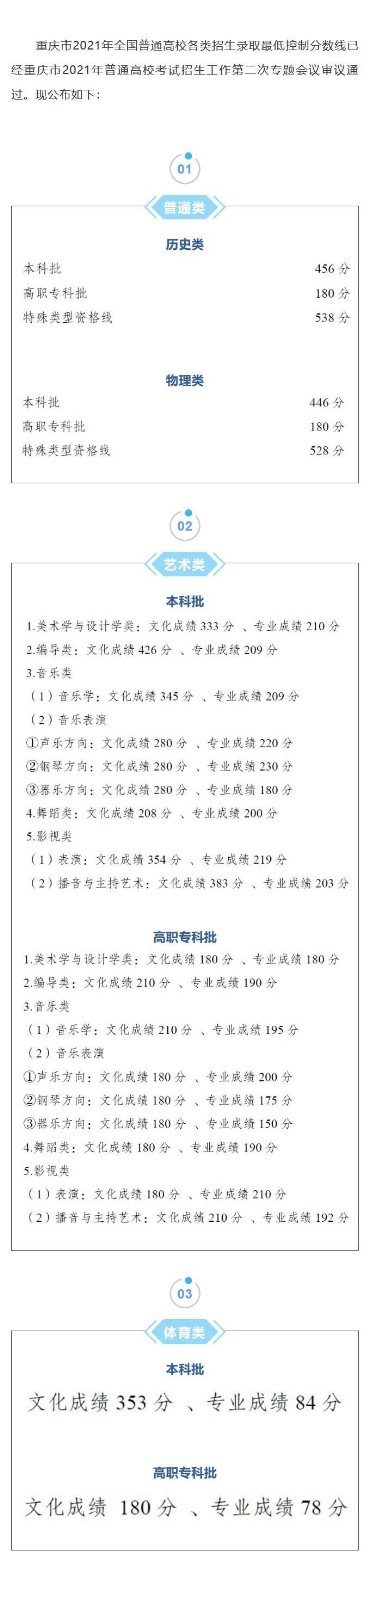 重庆高考分数线公布